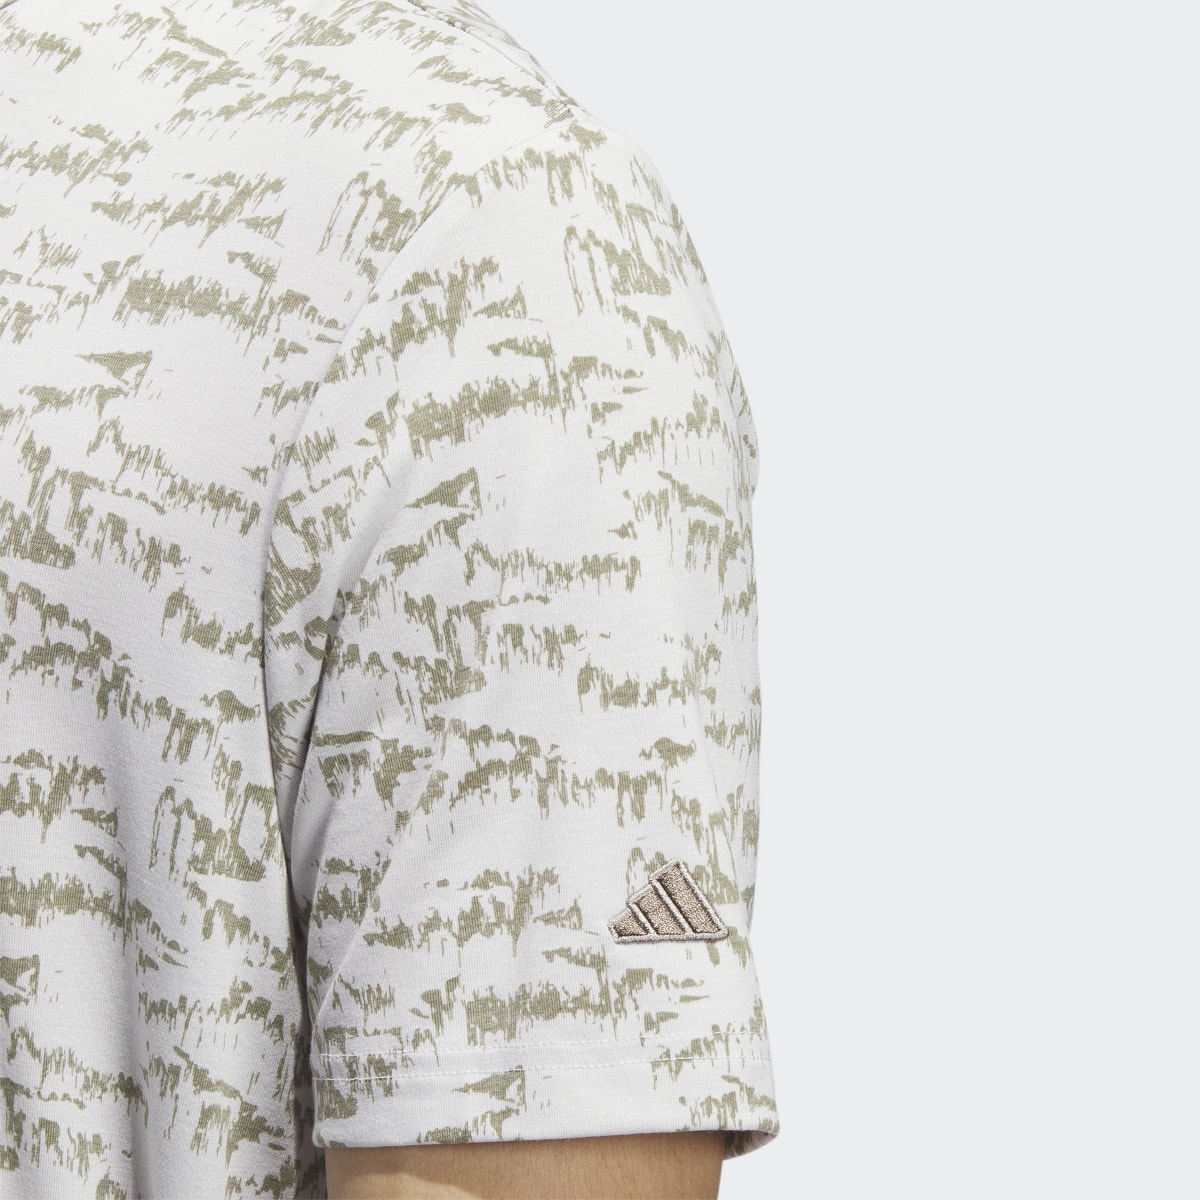 Adidas Go-To Printed Polo Shirt. 8